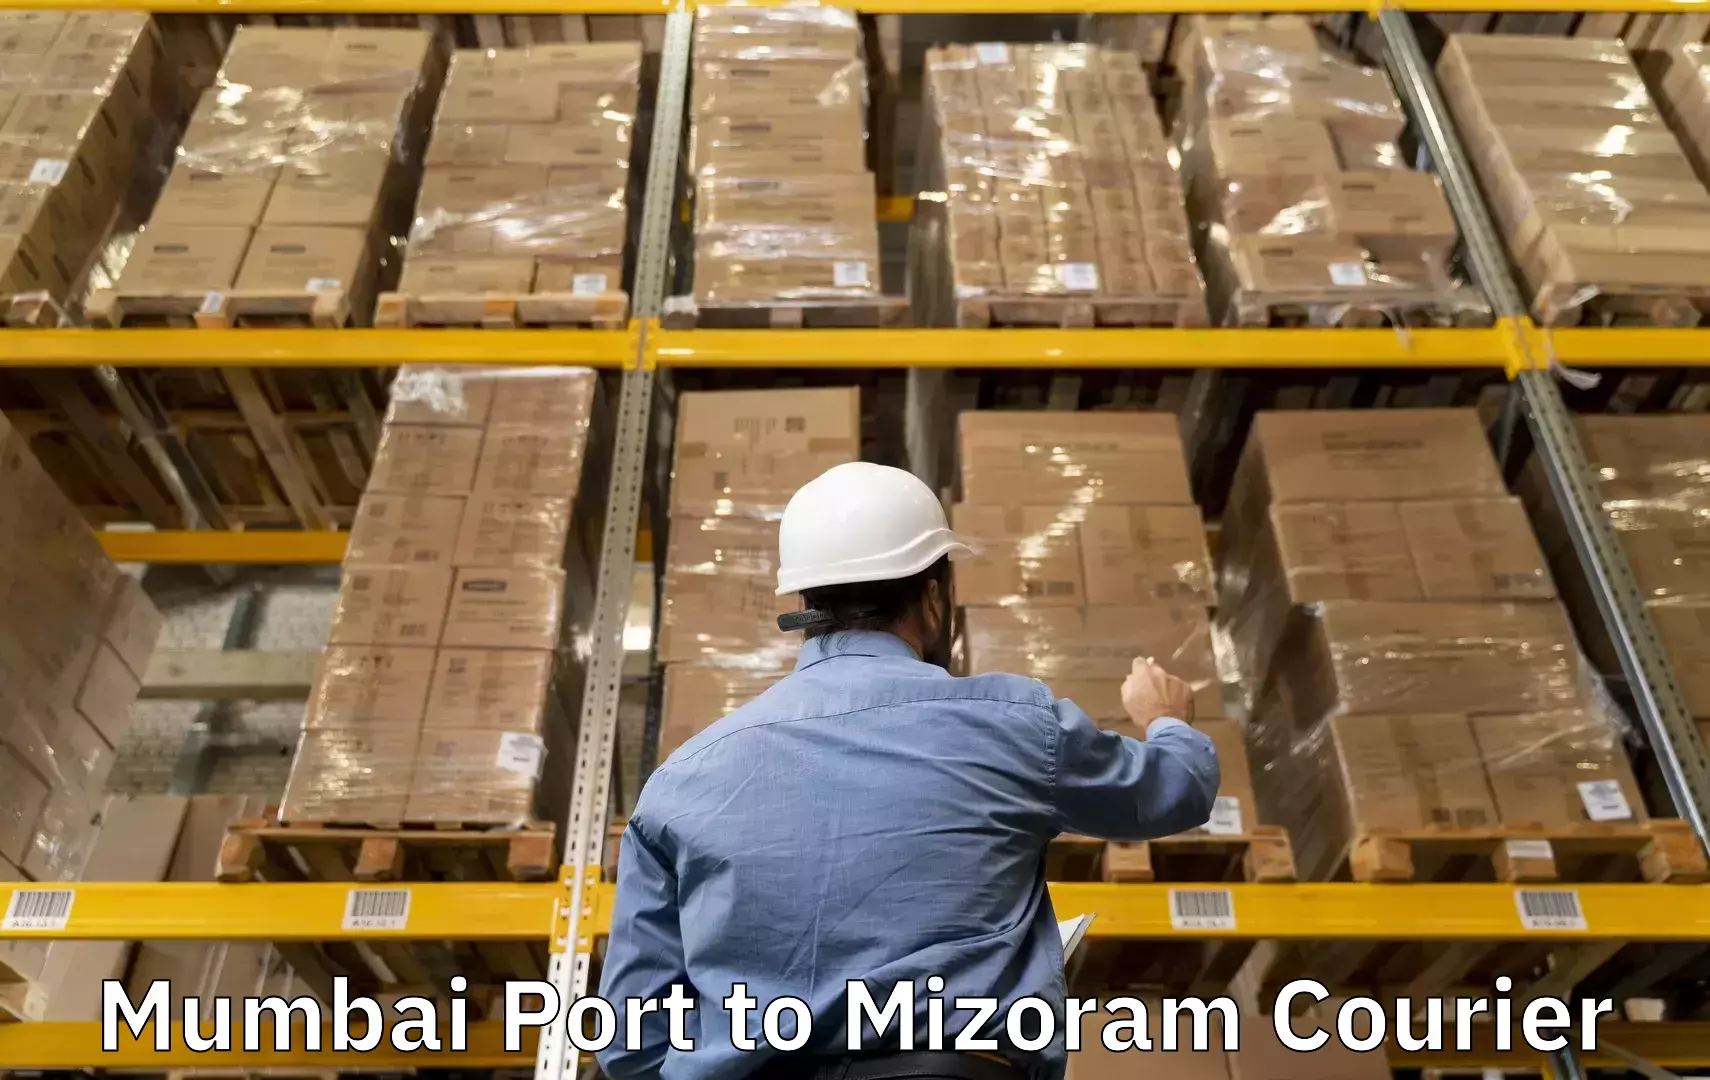 Baggage transport innovation Mumbai Port to Mizoram